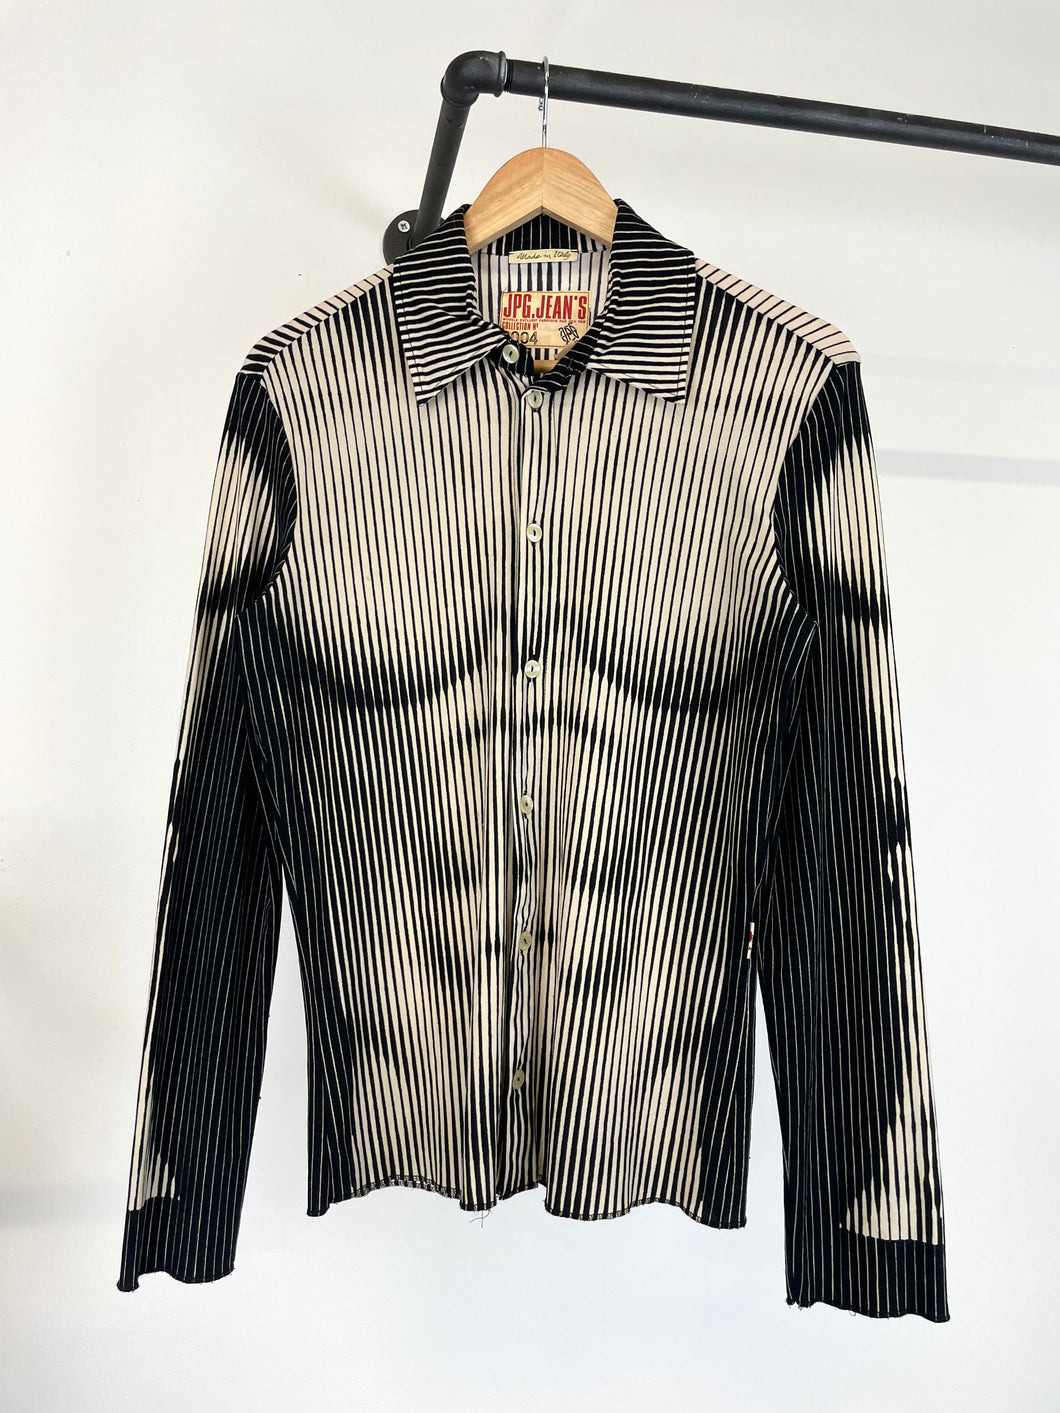 SS1996 Jean Paul Gaultier Muscle torso trompe l'oeil shirt